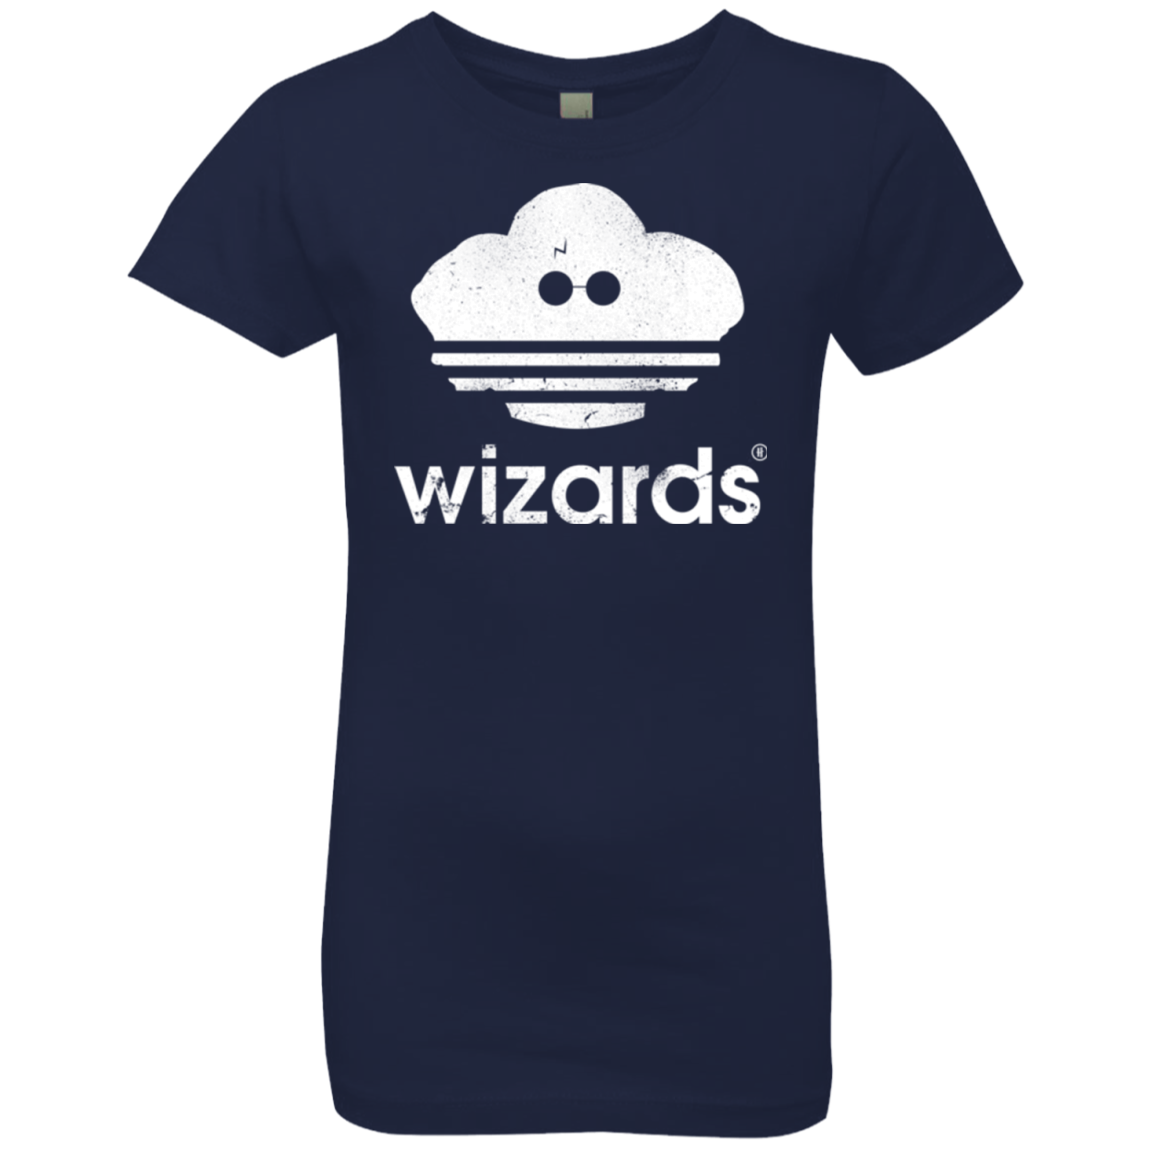 Wizards Girls Premium T-Shirt